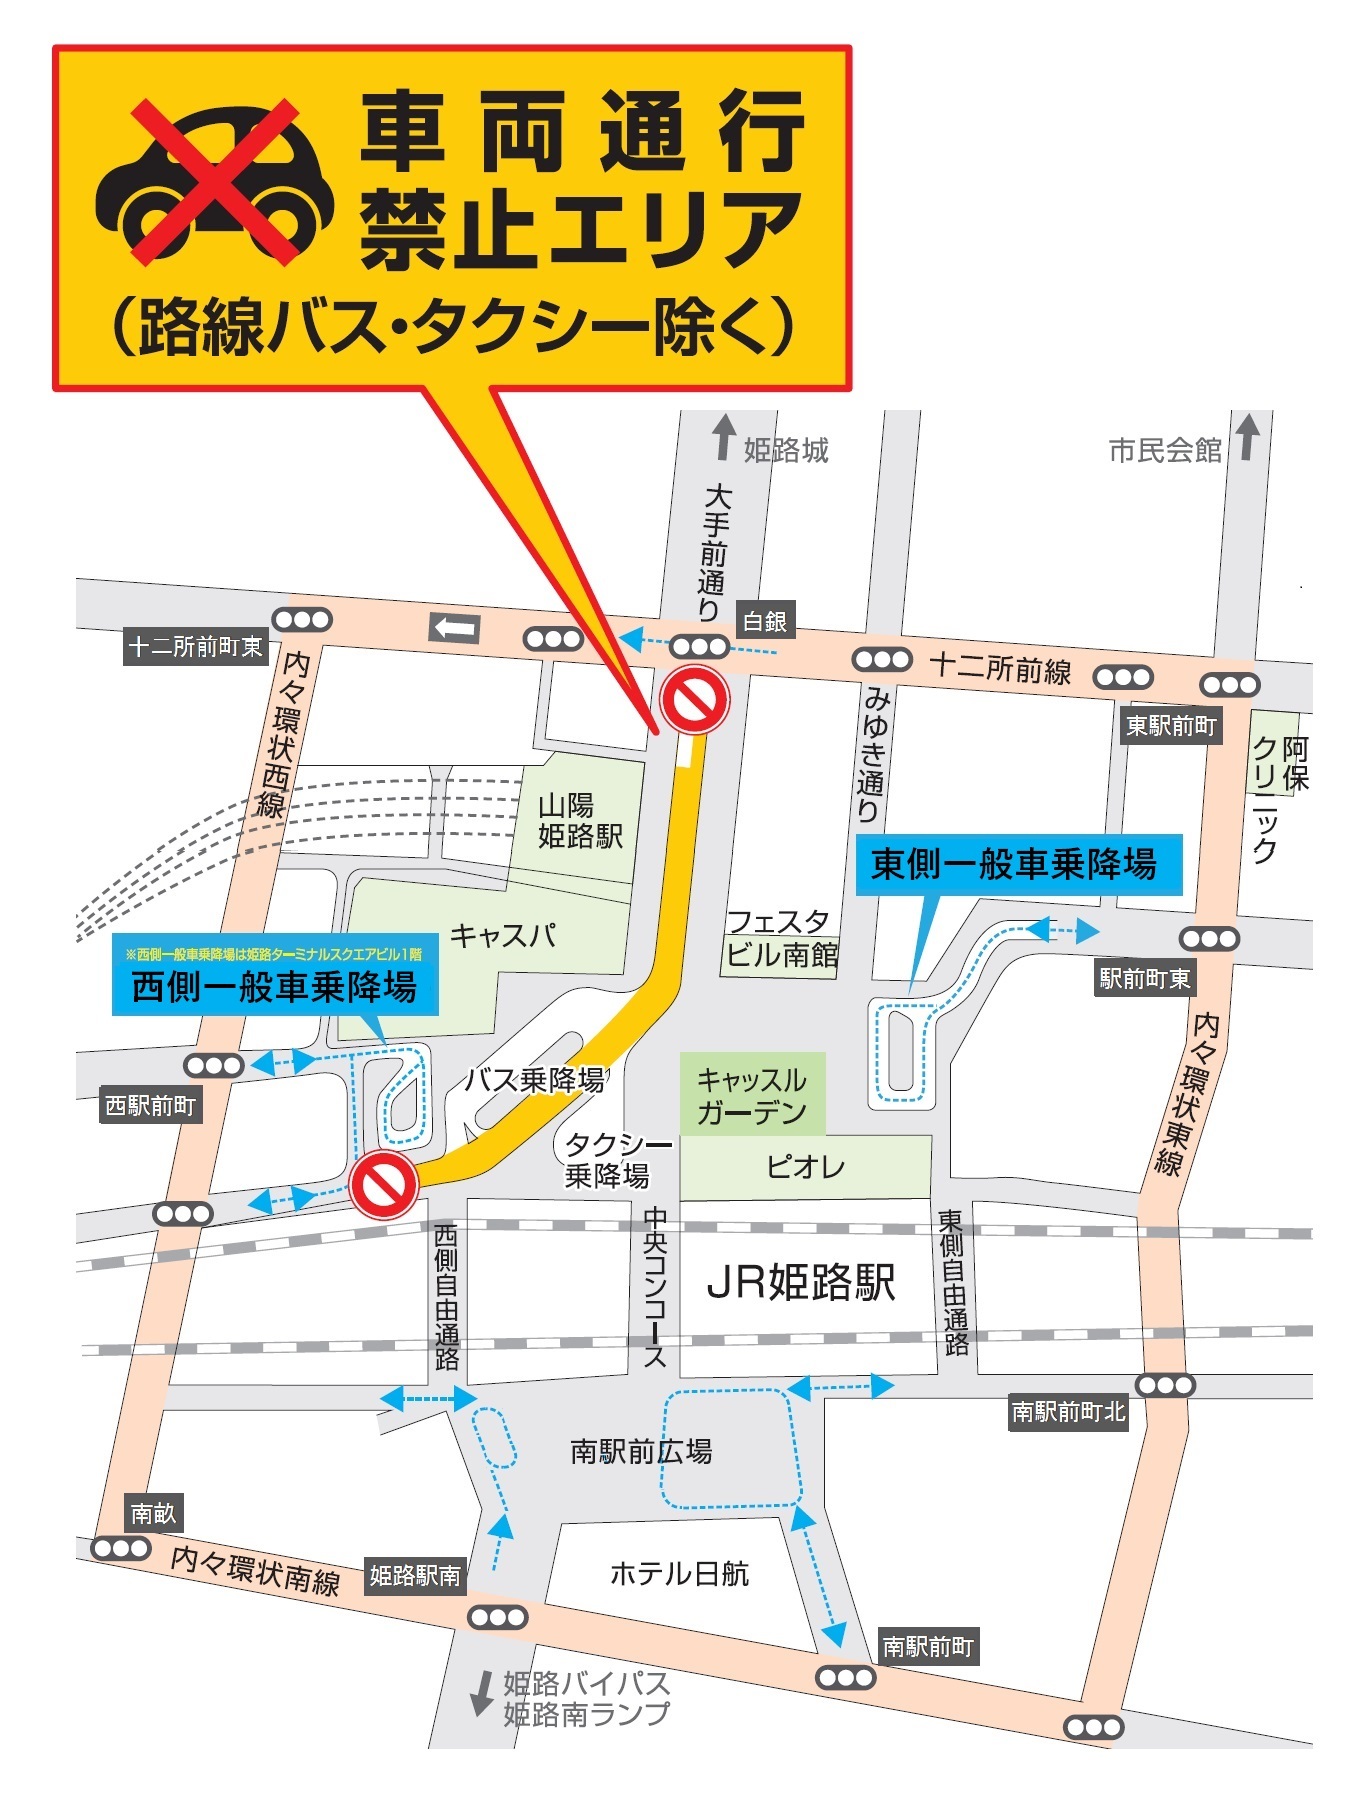 JR姫路駅北口の交通規制図